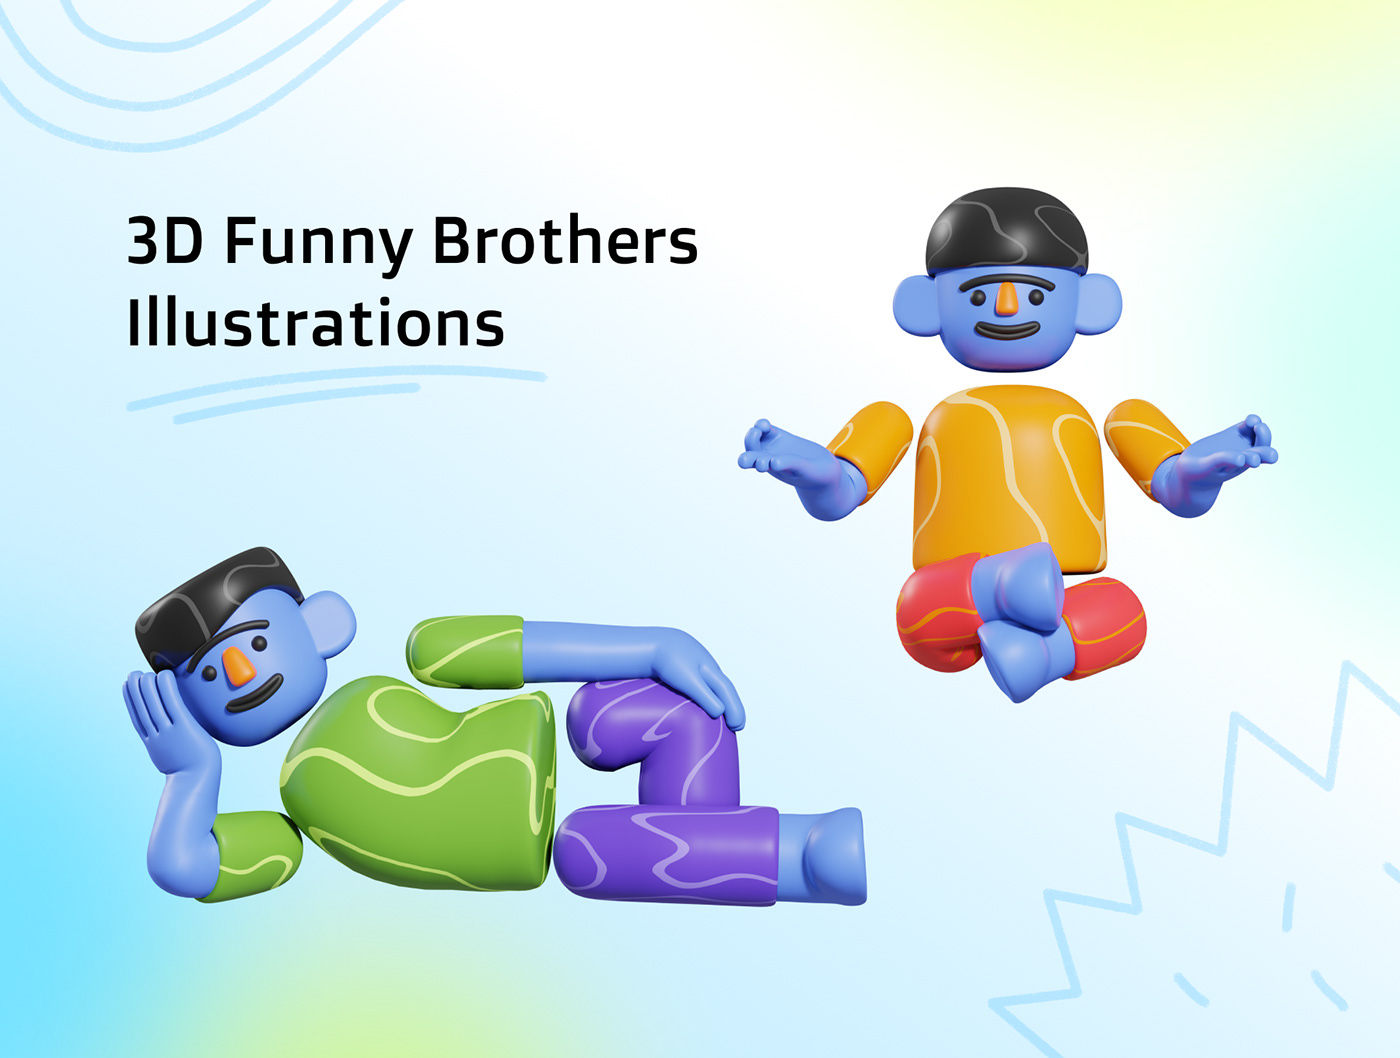 3D 3D Character 3D illustration 3d modeling 3D UI animation  blender blender 3d characters ui ux